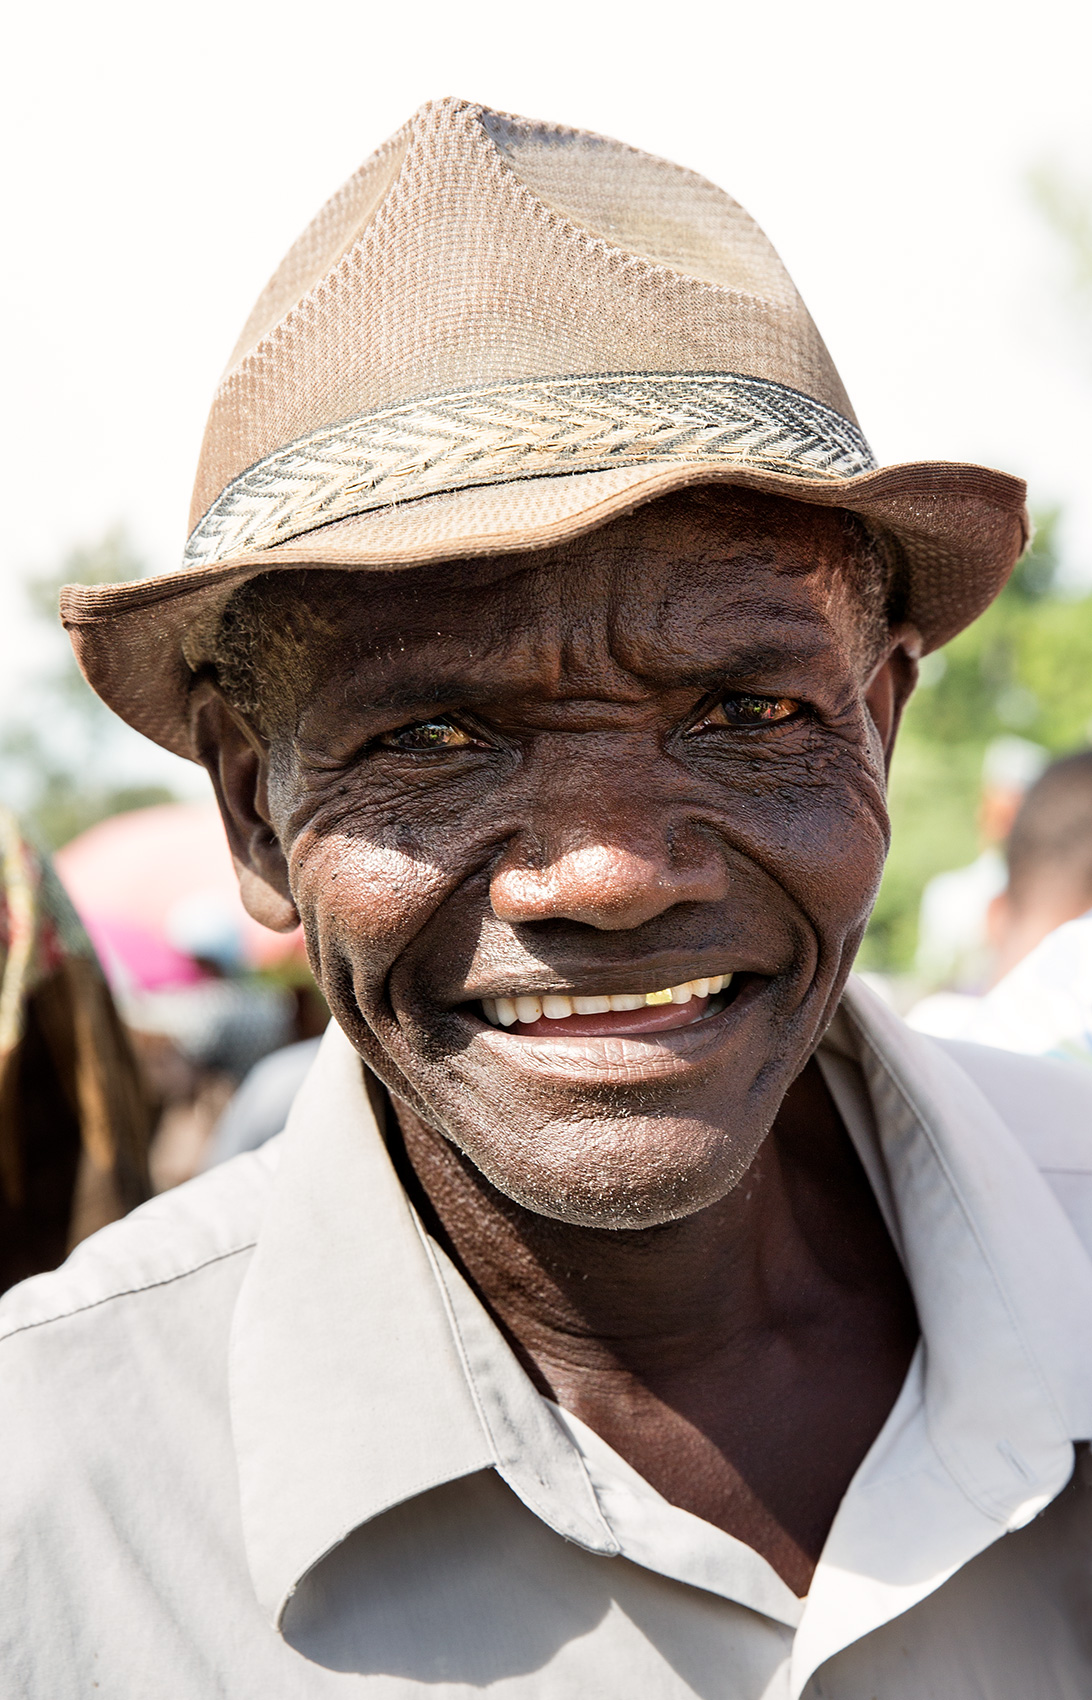 TRAVEL_HAITI_haitian_caribbean_market_hat_smile_0506_WB